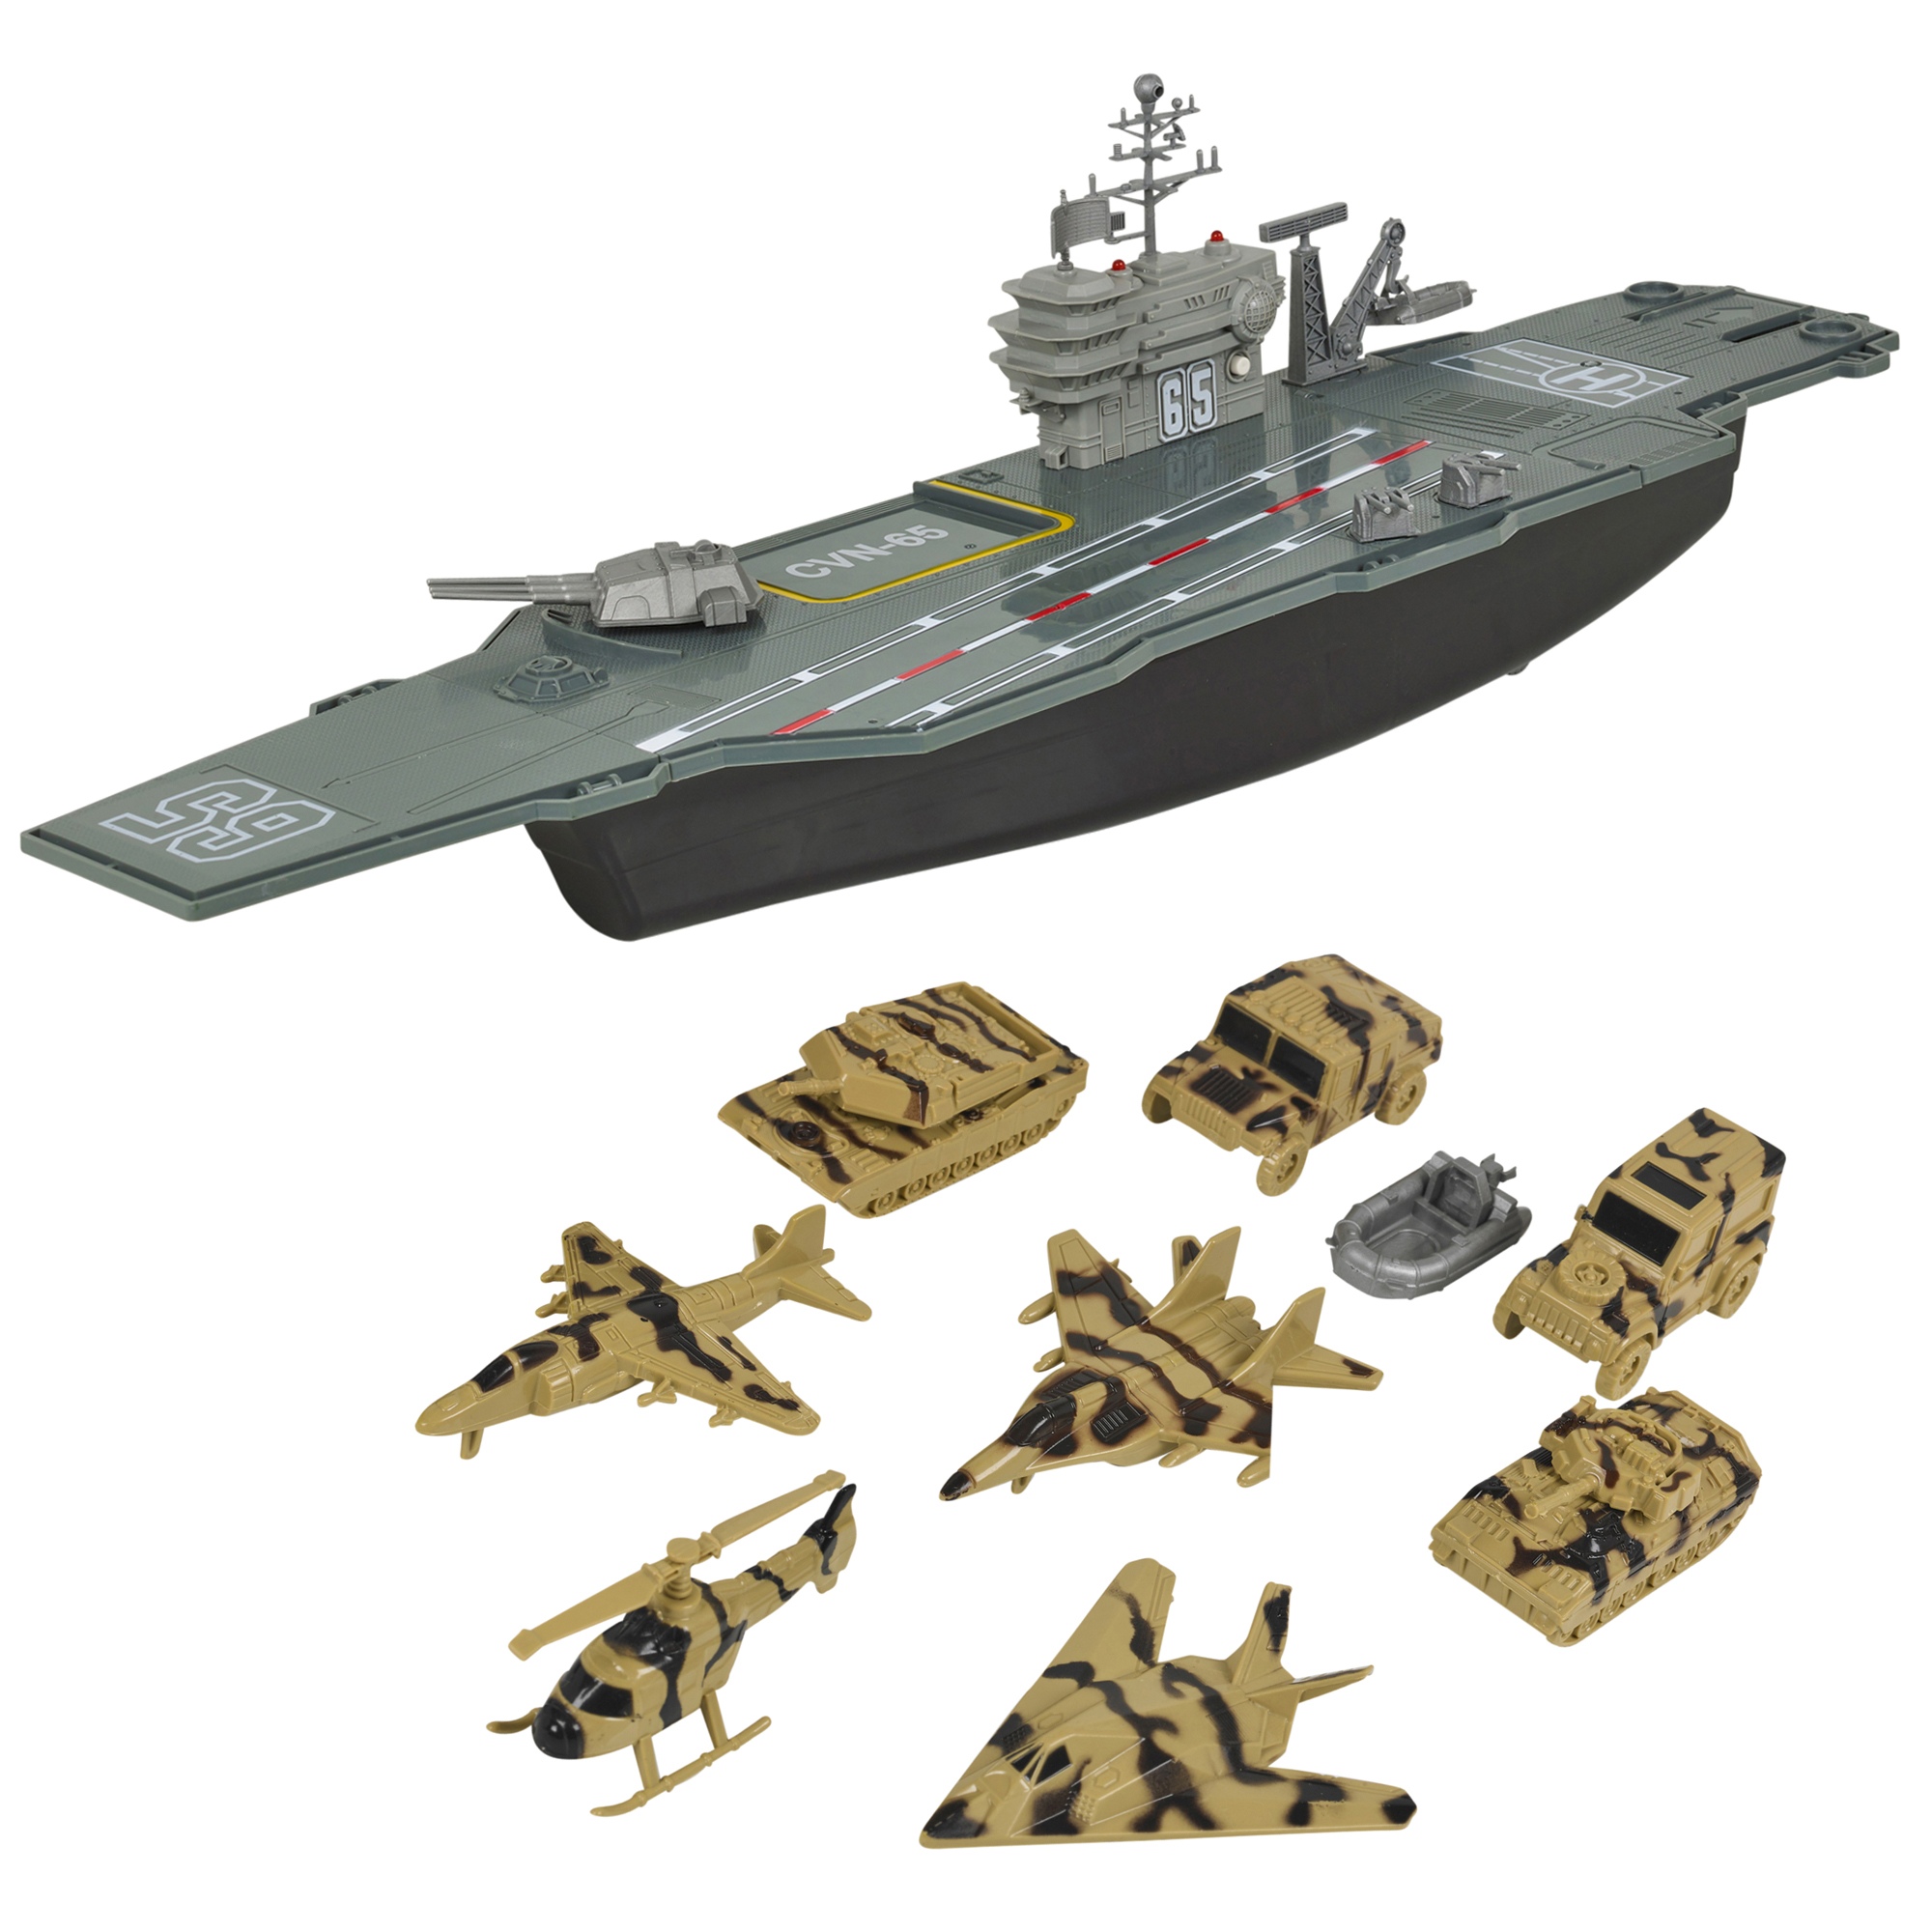 battleship toy boat